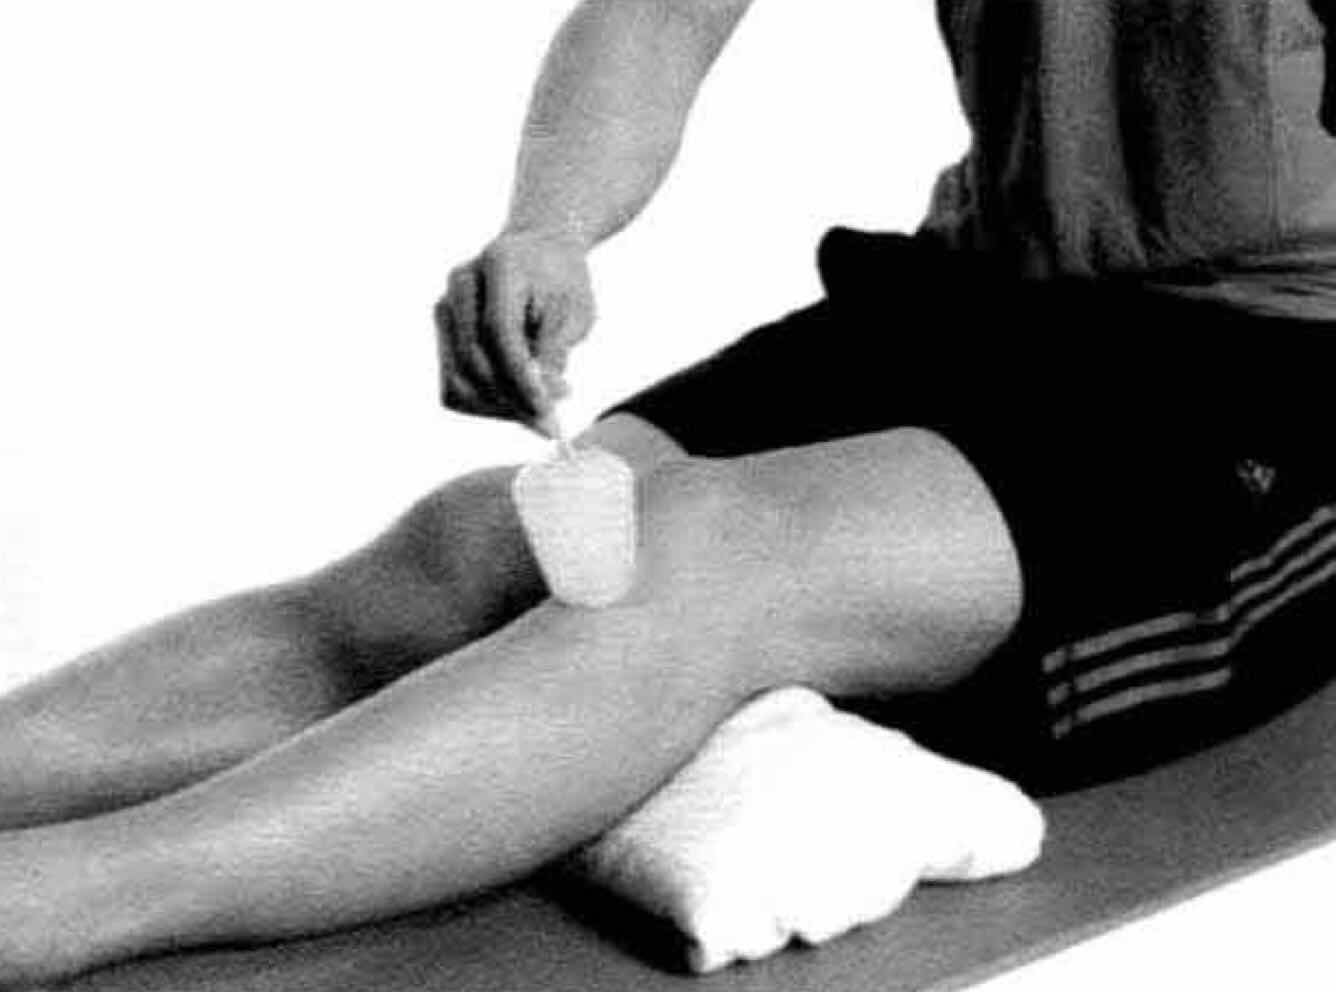 膝盖髌腱炎按摩手法图片